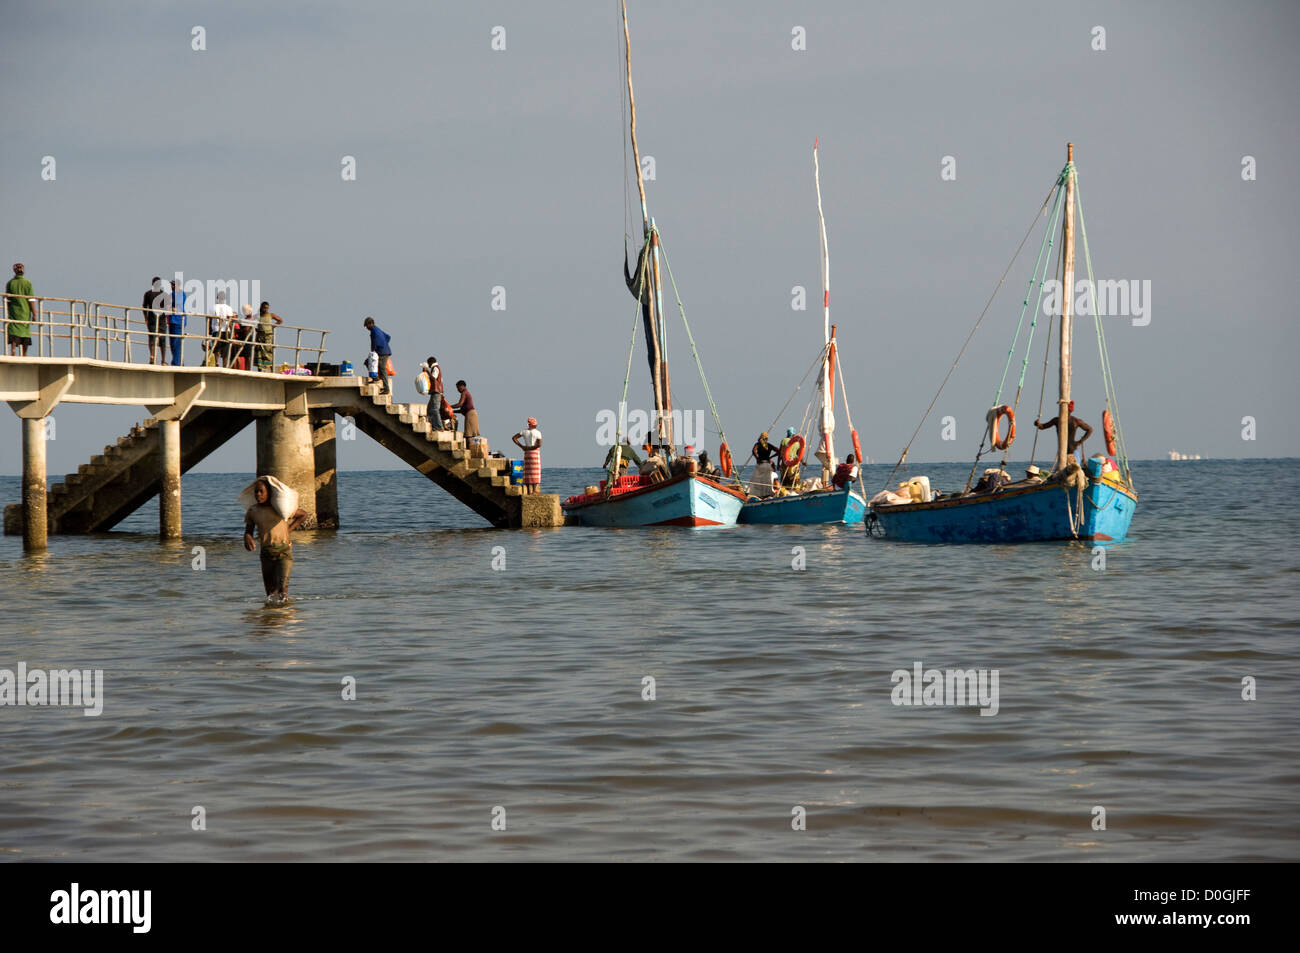 Inhaca molo è brulicante di attività come i commercianti locali vanno a prelevare la merce che è arrivata da Maputo. Foto Stock